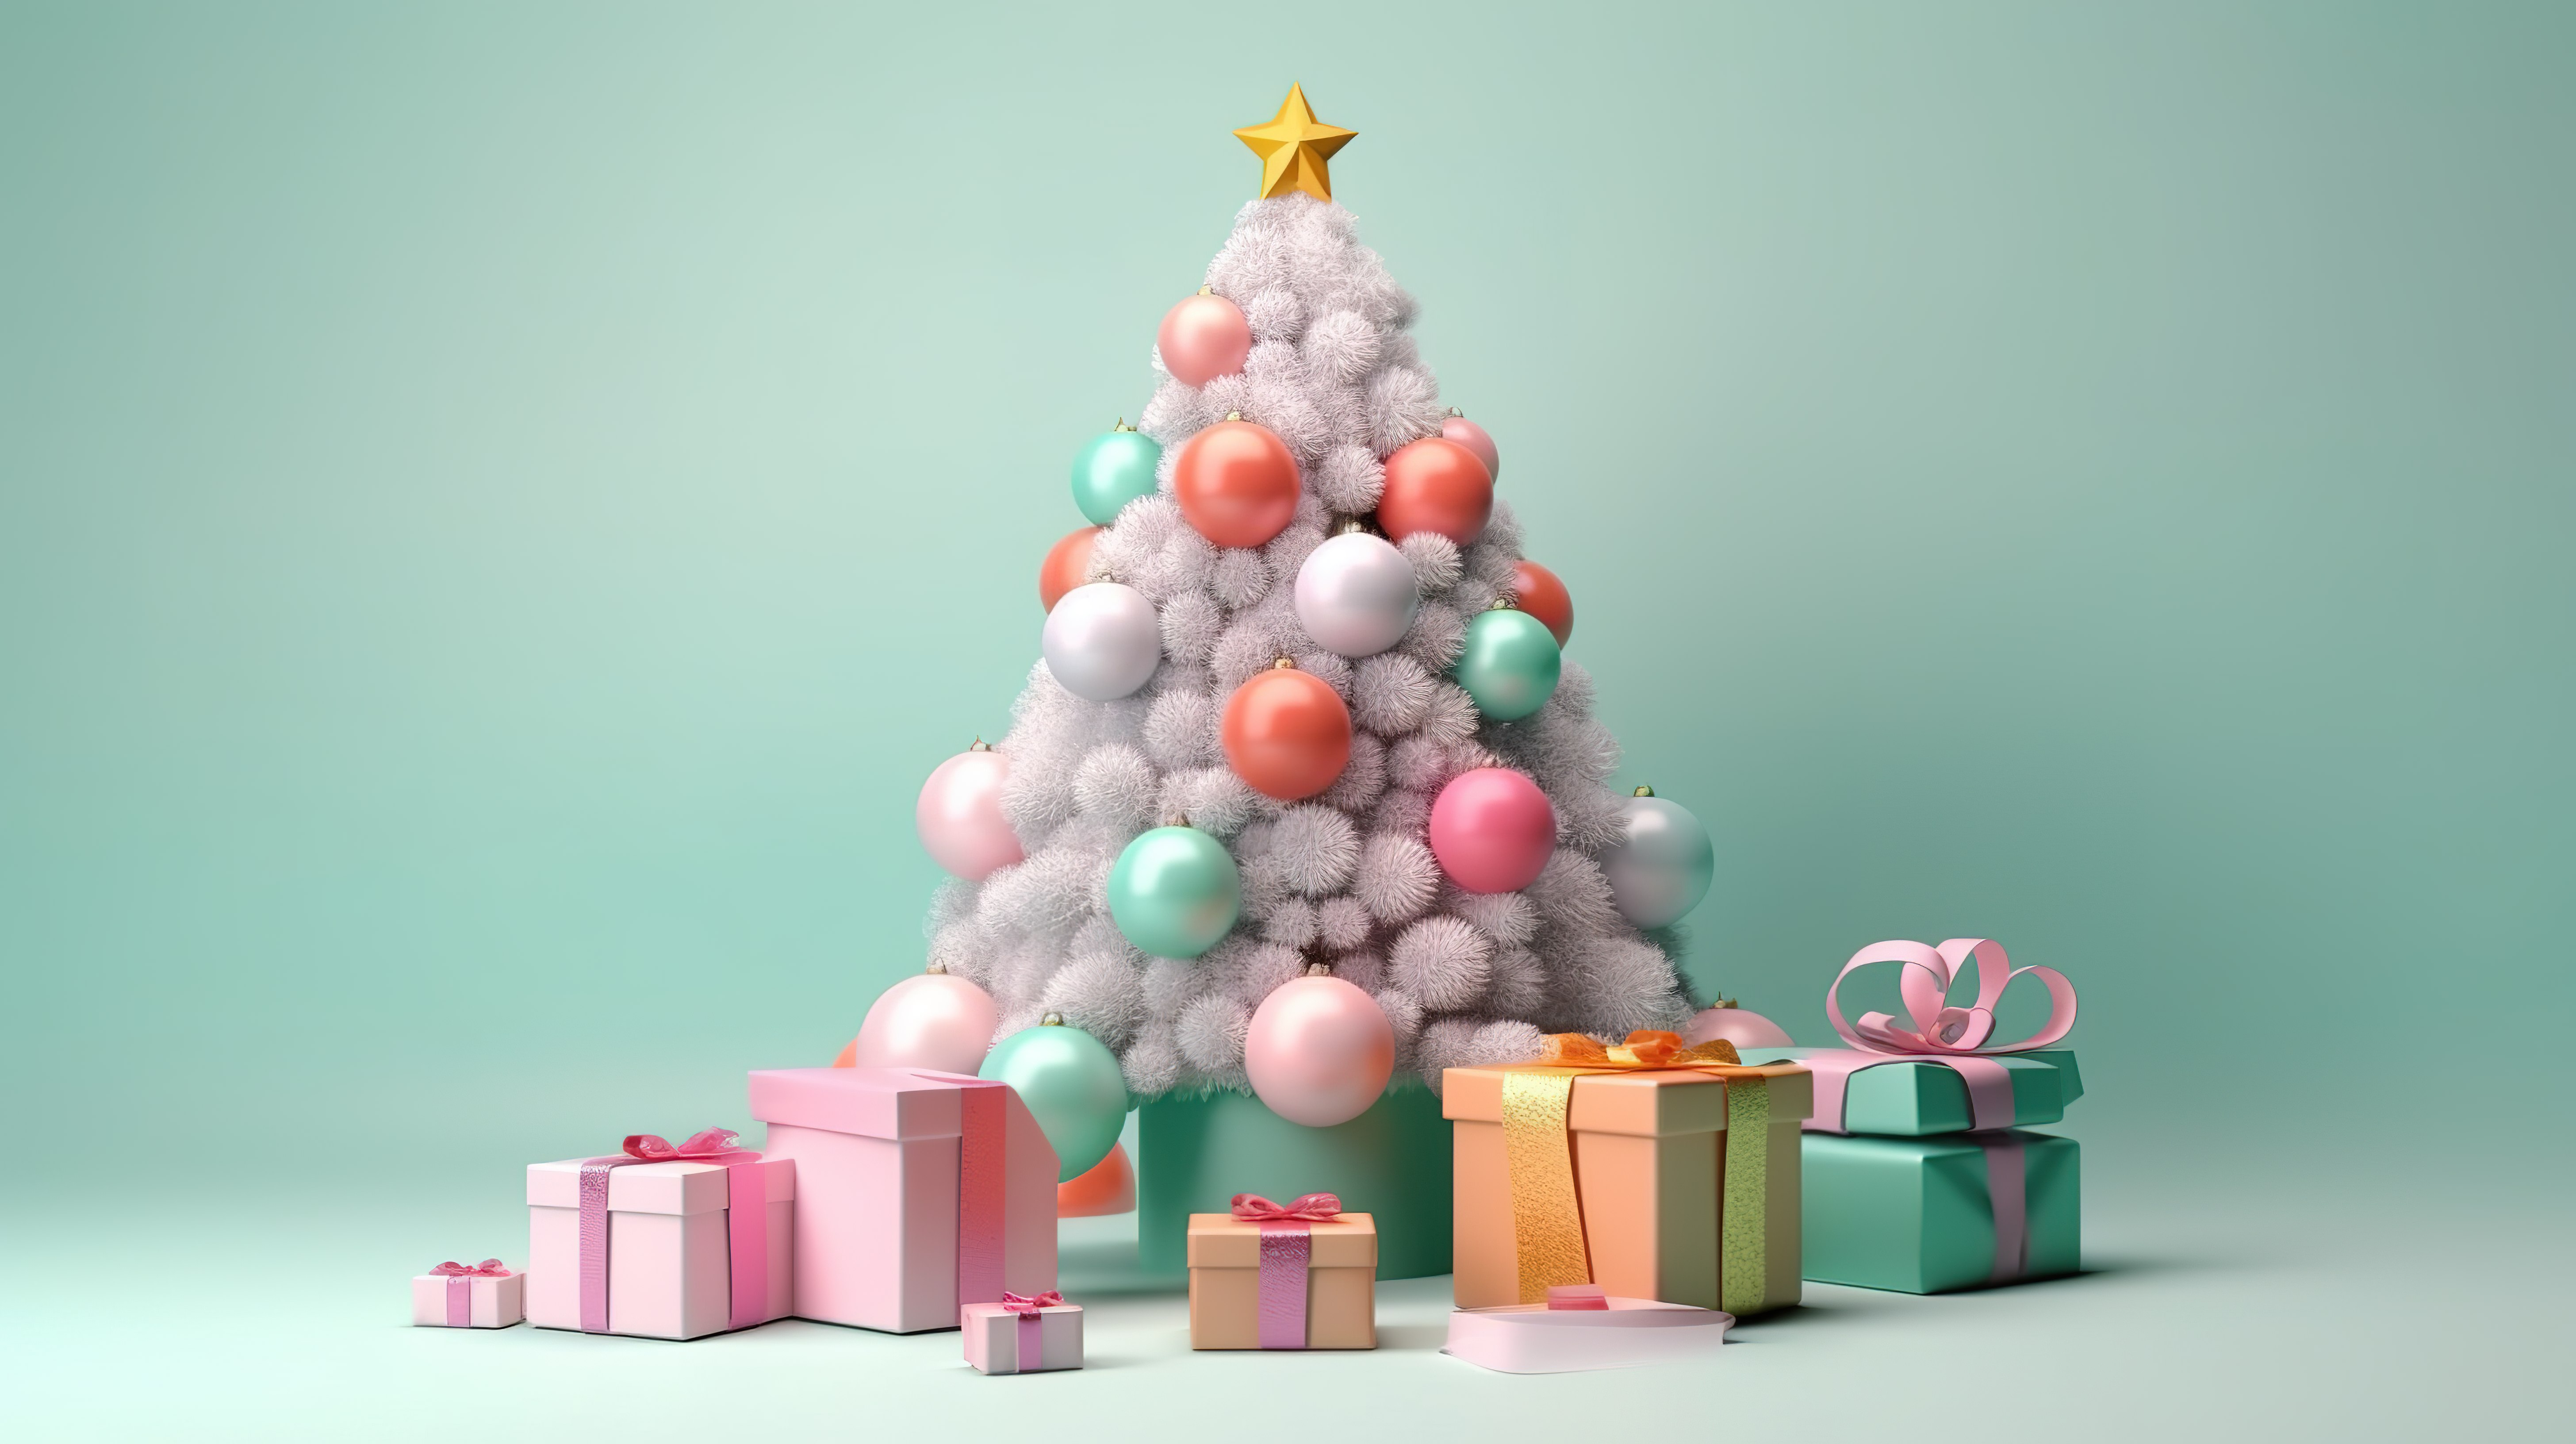 一个欢乐的节日，糖果充满的礼品盒和圣诞树在柔和的雪背景 3d 渲染图片